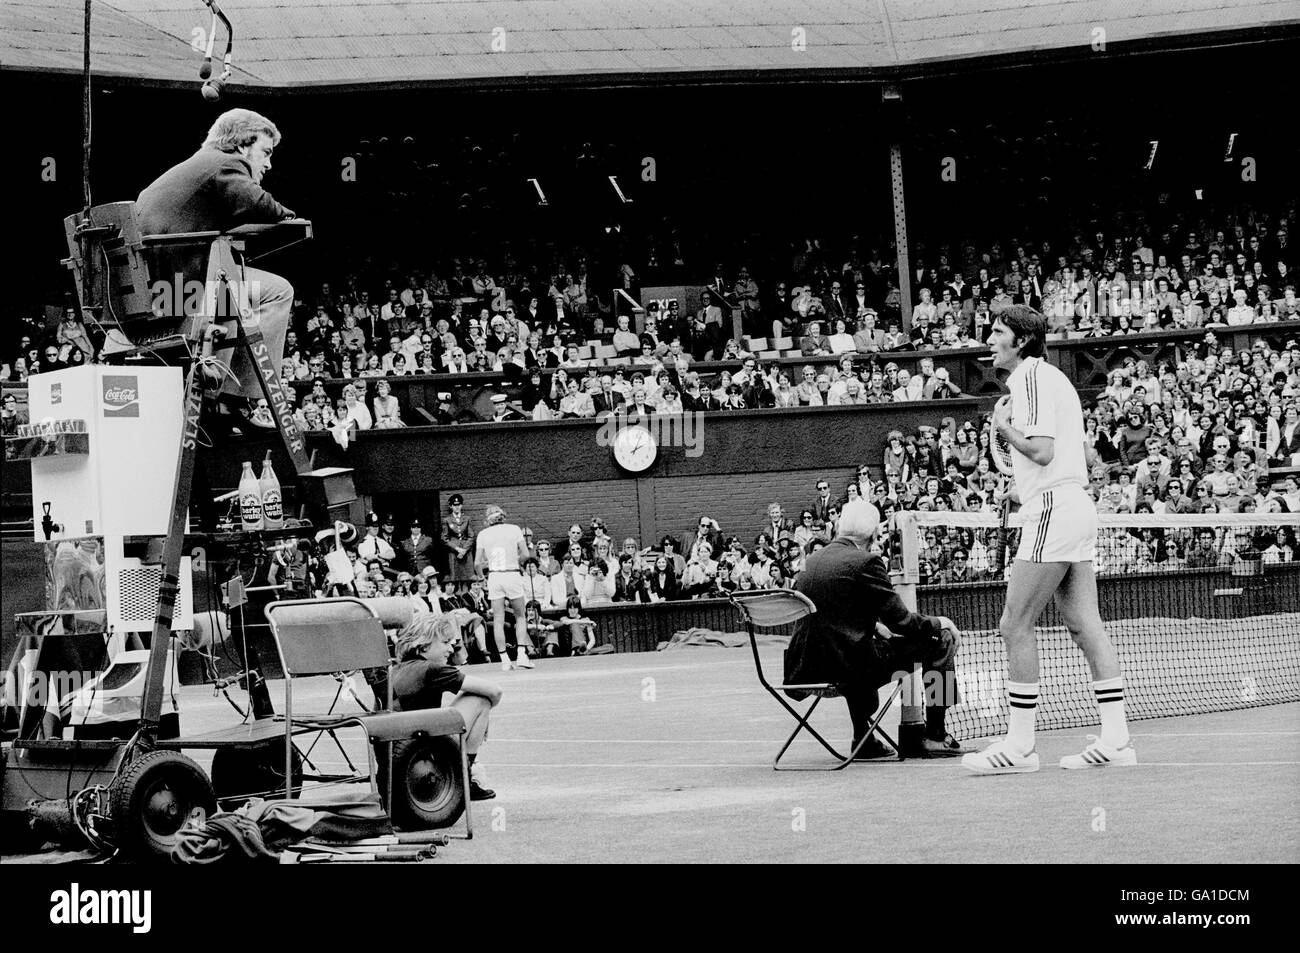 Tennis - Wimbledon Championships 1977 - Ilie Nastase v Bjorn Borg Stock Photo